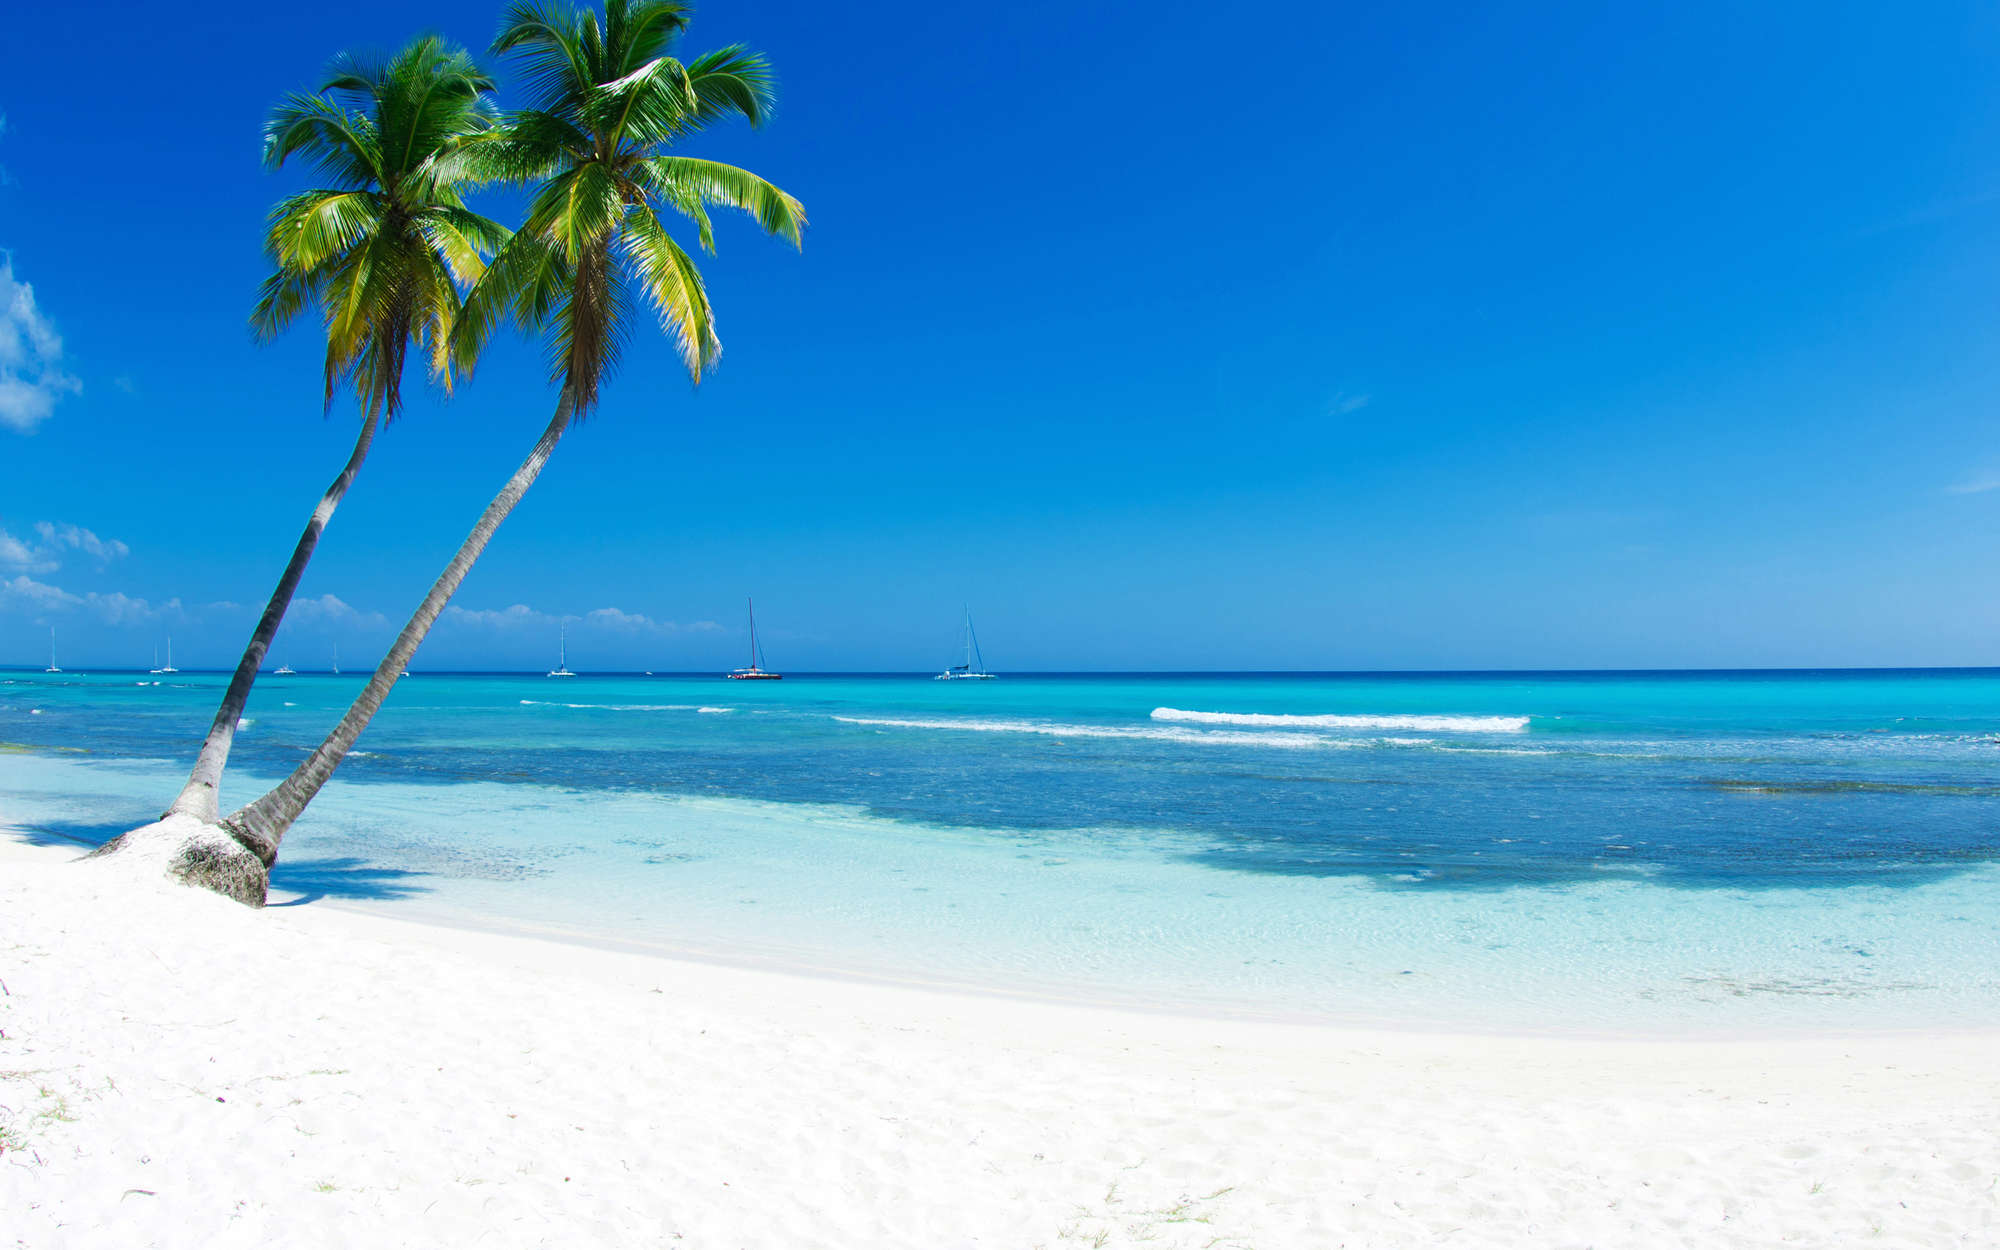             Fotomural playa de arena blanca con palmera - tejido no tejido texturado
        